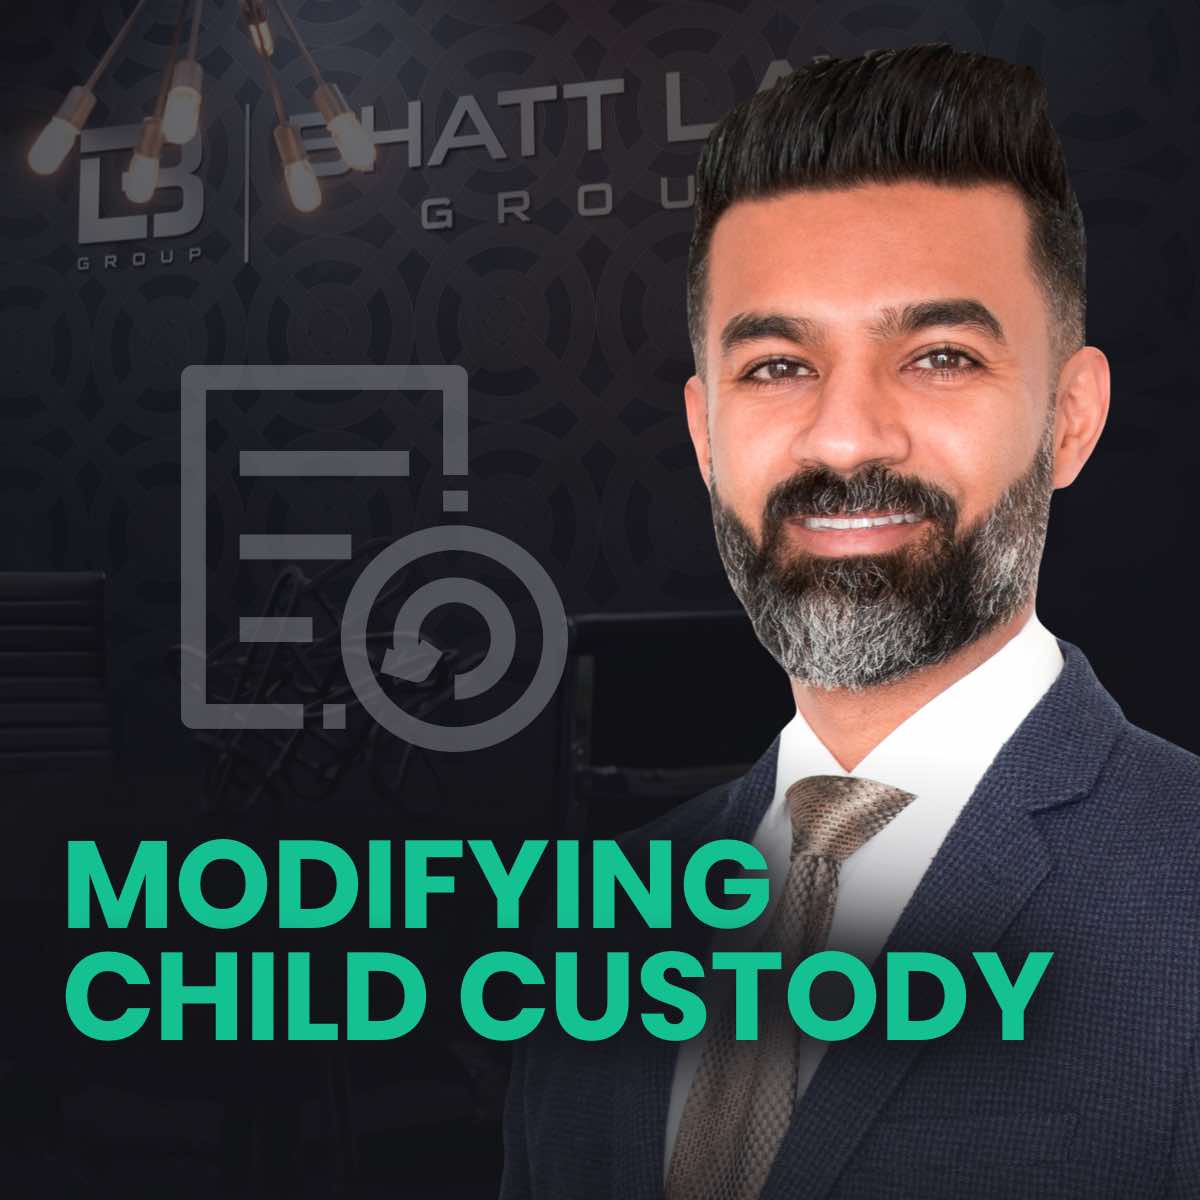 New Jersey Modifying Child Custody